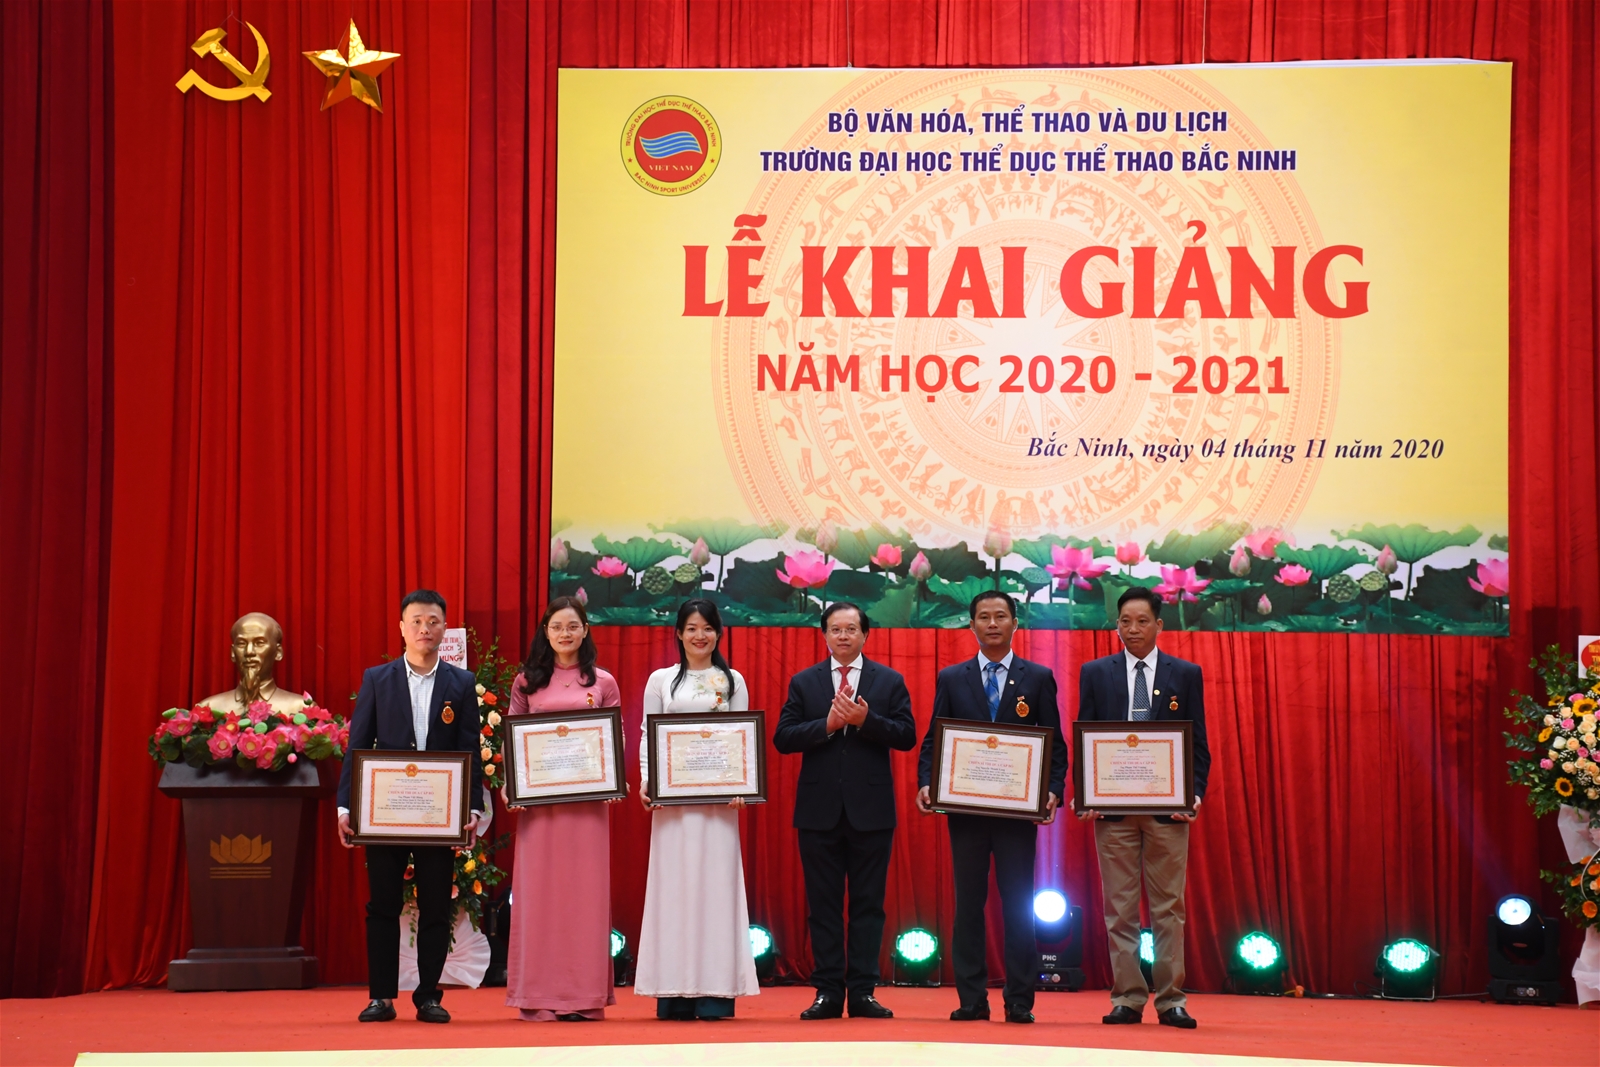 Chùm ảnh Trường Đại học Thể dục thể thao Bắc Ninh Khai giảng năm học 2020-2021